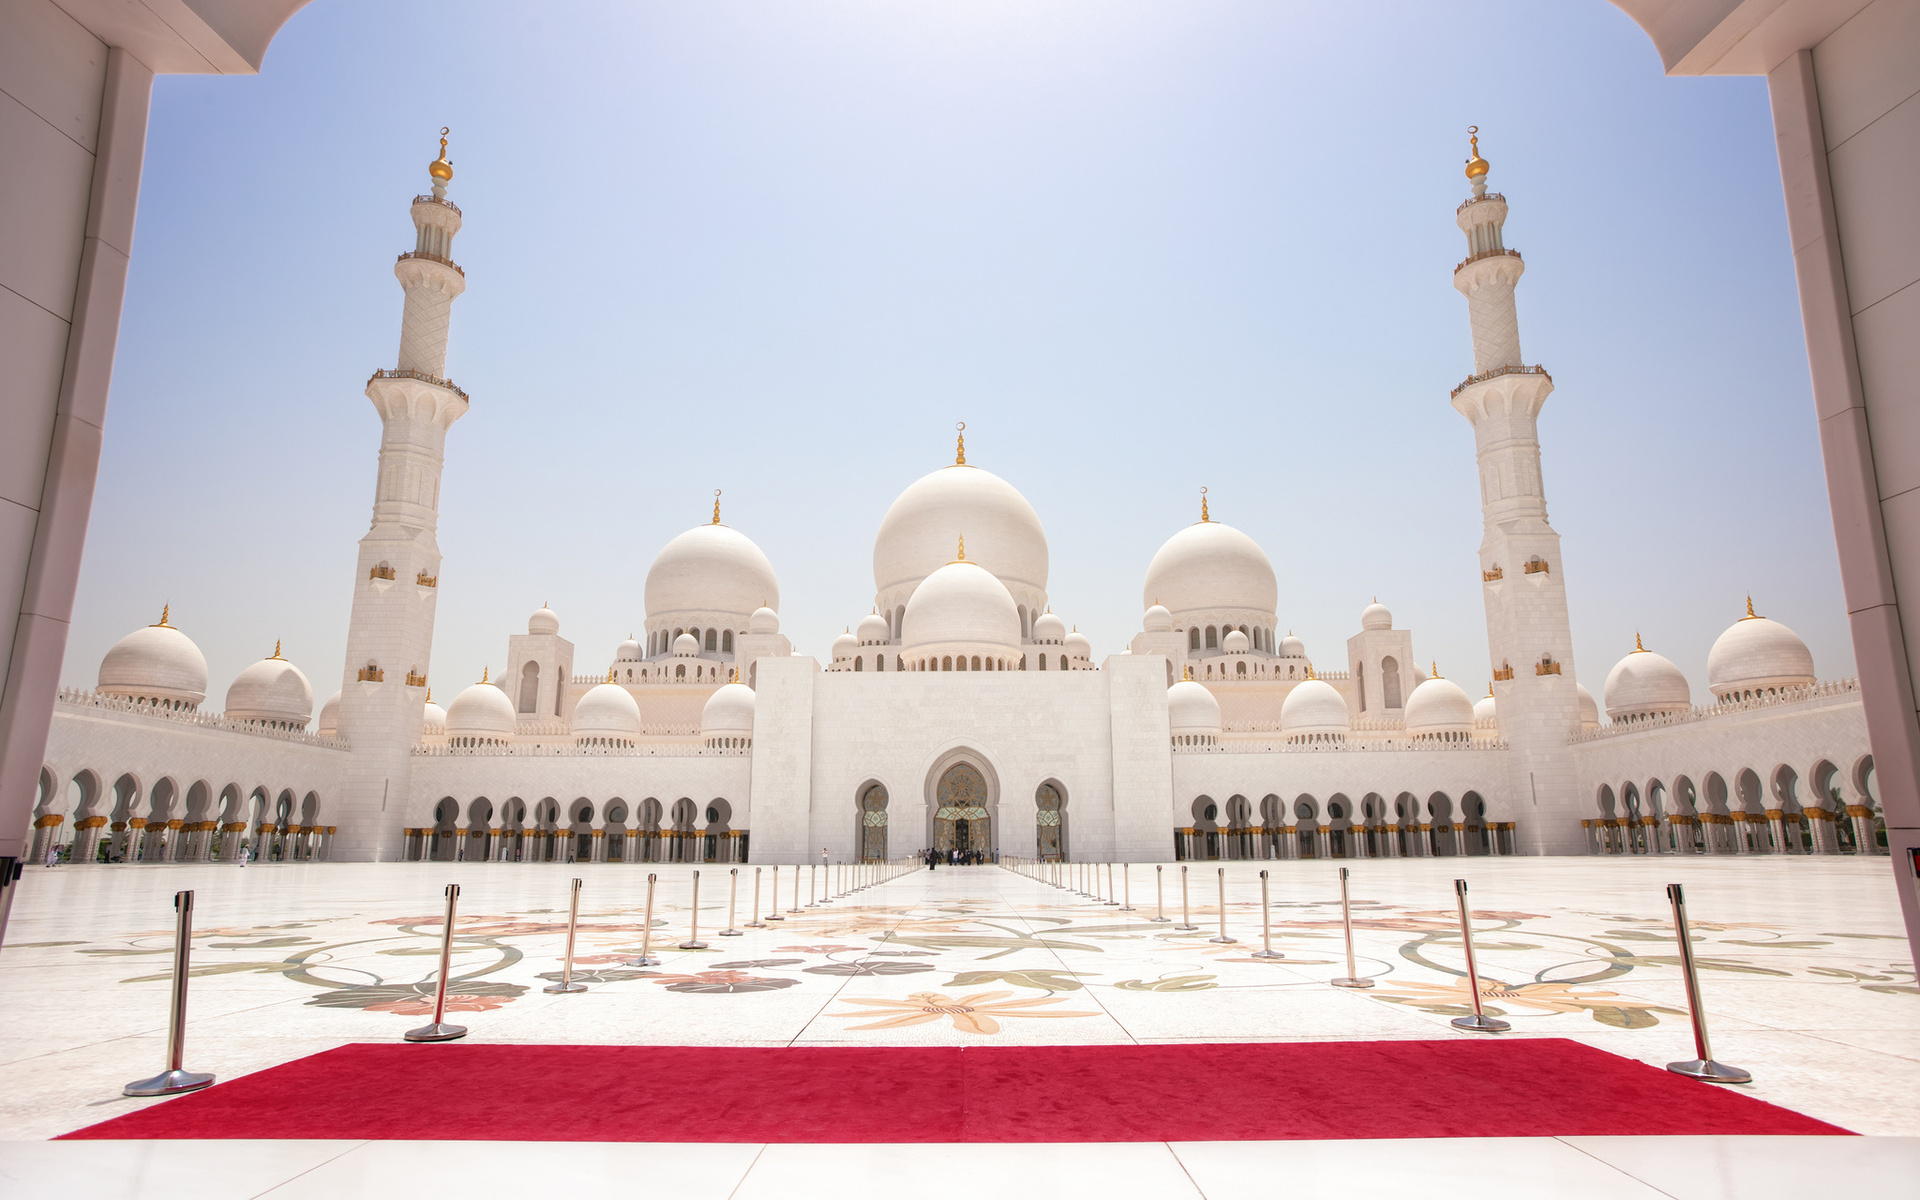 عکس فوق العاده زیبا از مسجد بسیار بزرگ با فرش قرمز 